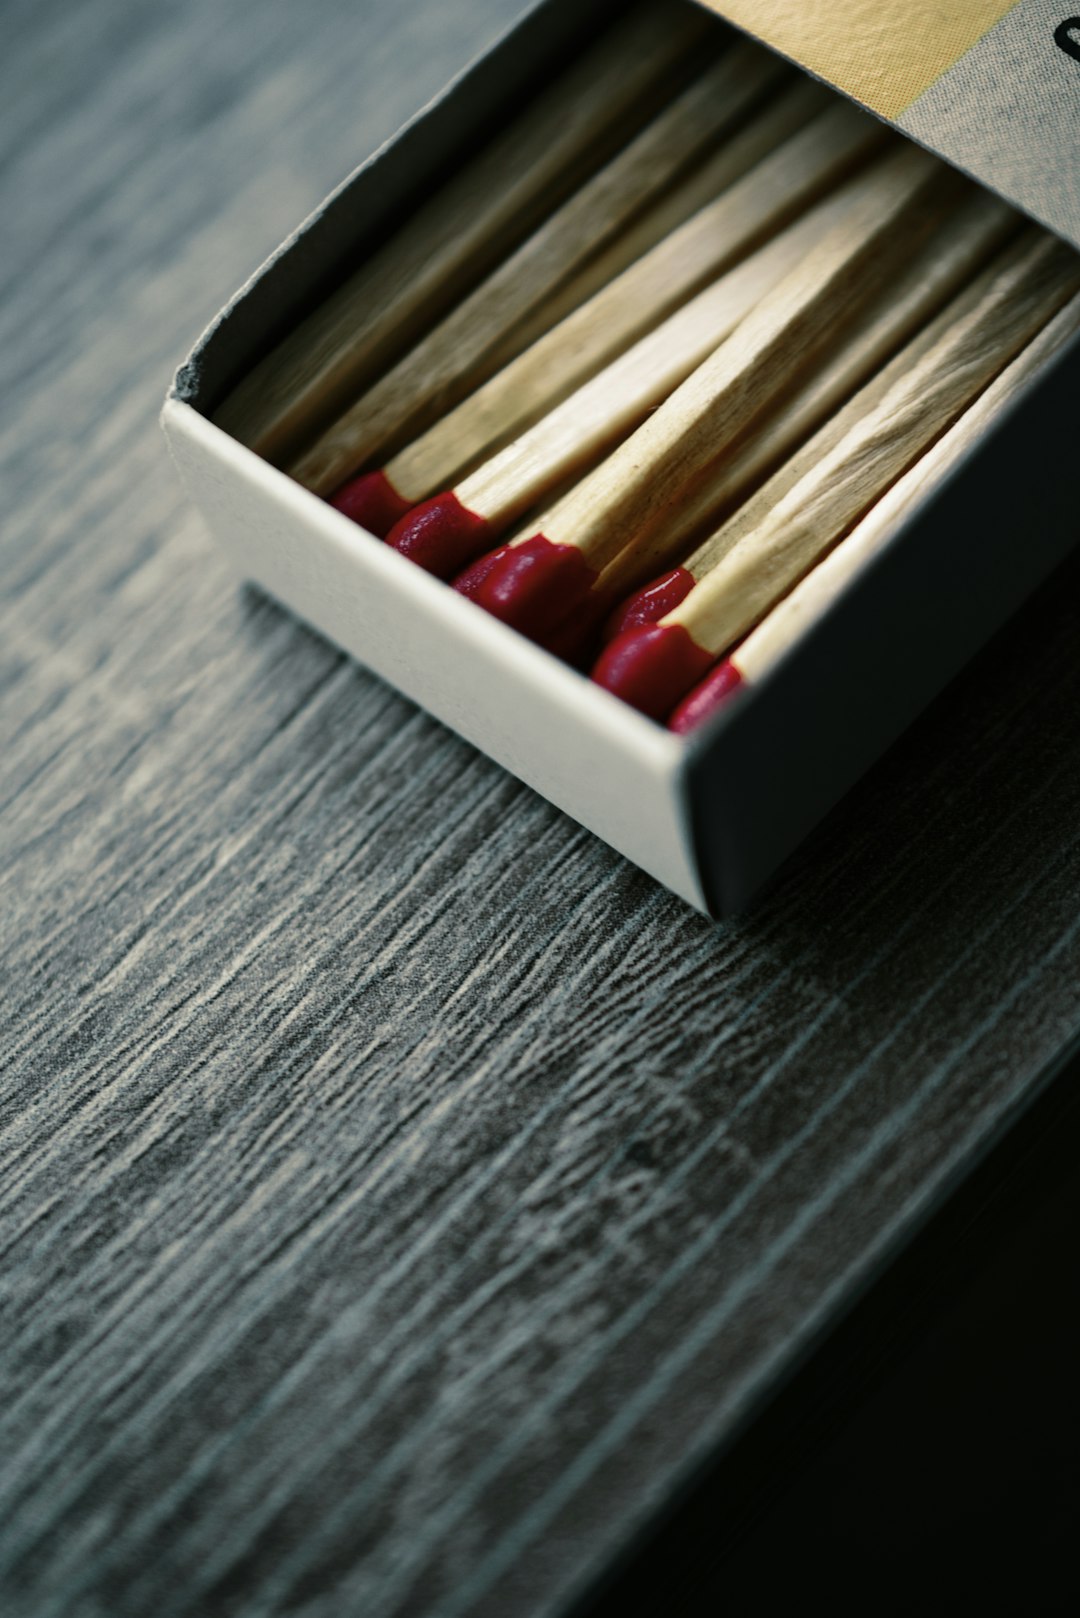 match sticks in match box